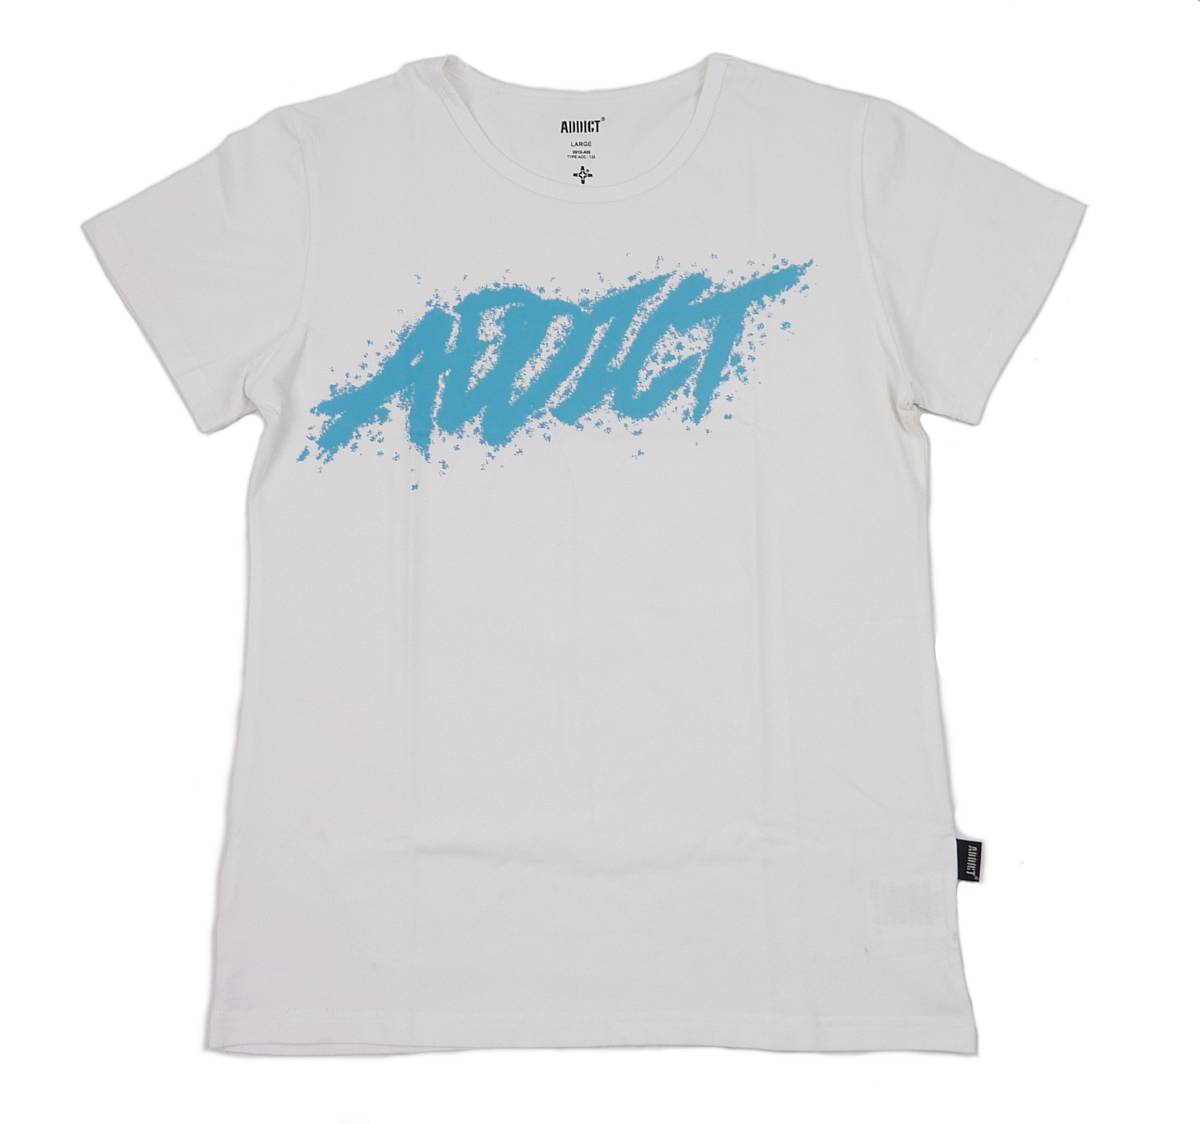 Addict アディクト スプレーペイント TEE 半袖 Tシャツ 並行輸入品 ホワイト L プレゼント 特価商品